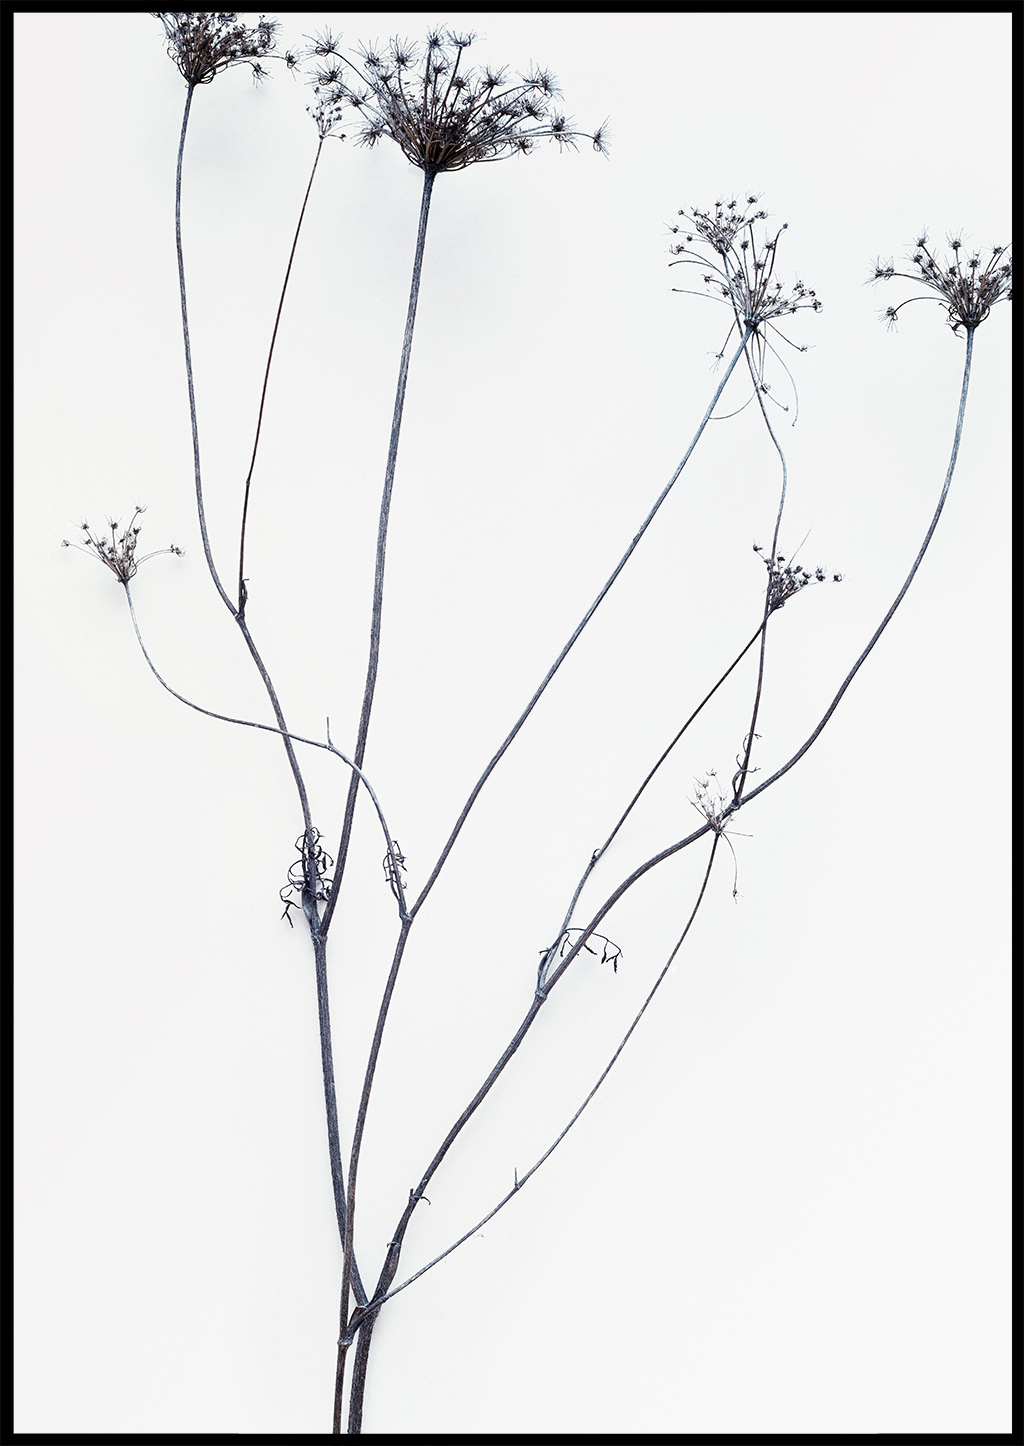 Fotografie von Stefan Freund, Stillleben, Winter, Frost, Pflanzen